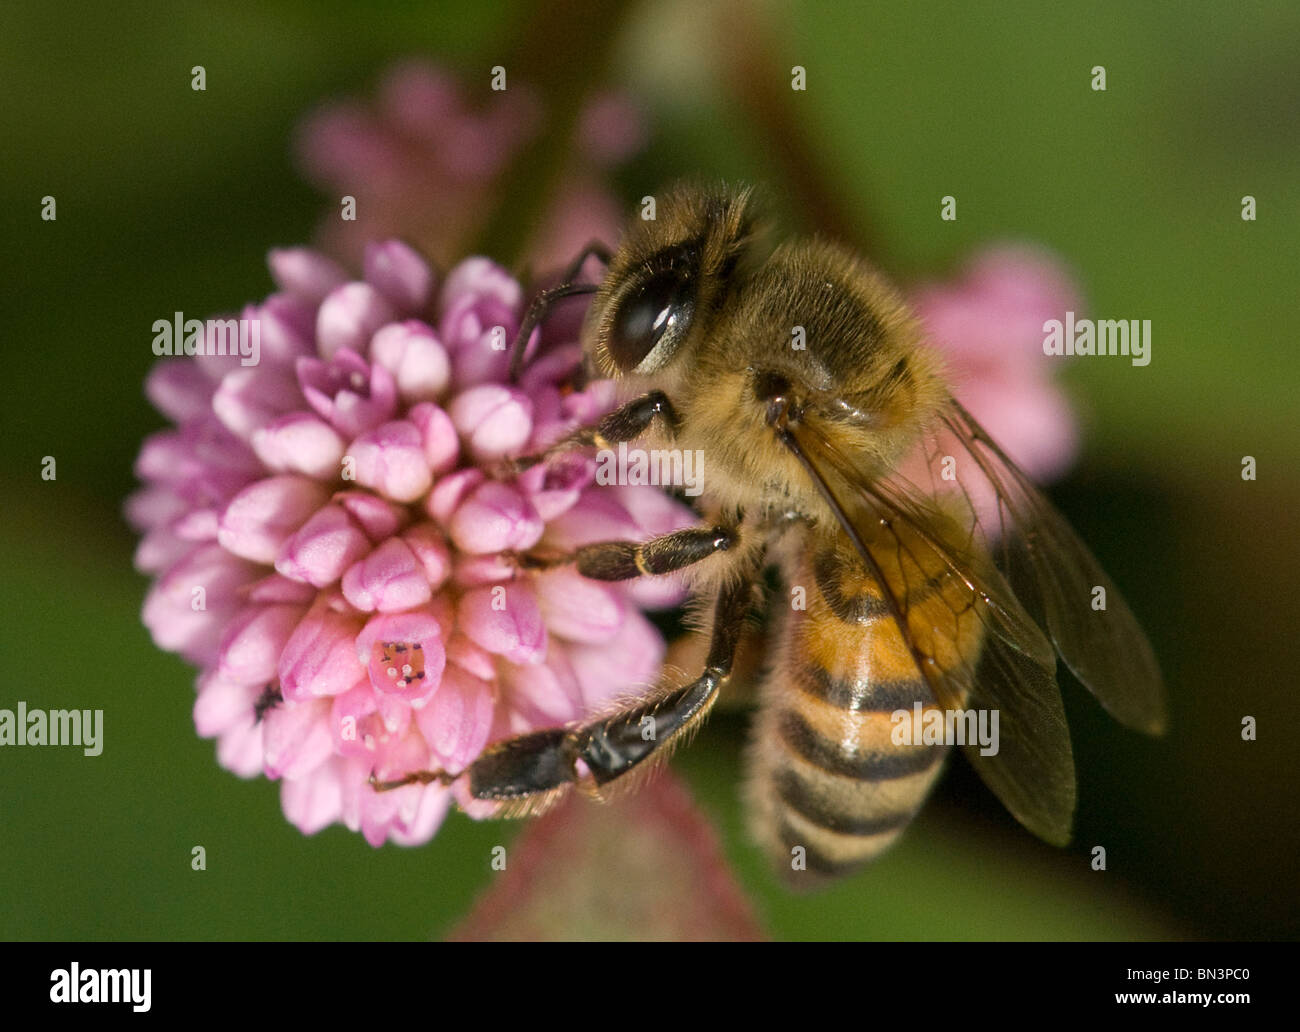 La quête d'abeilles sur une fleur Banque D'Images